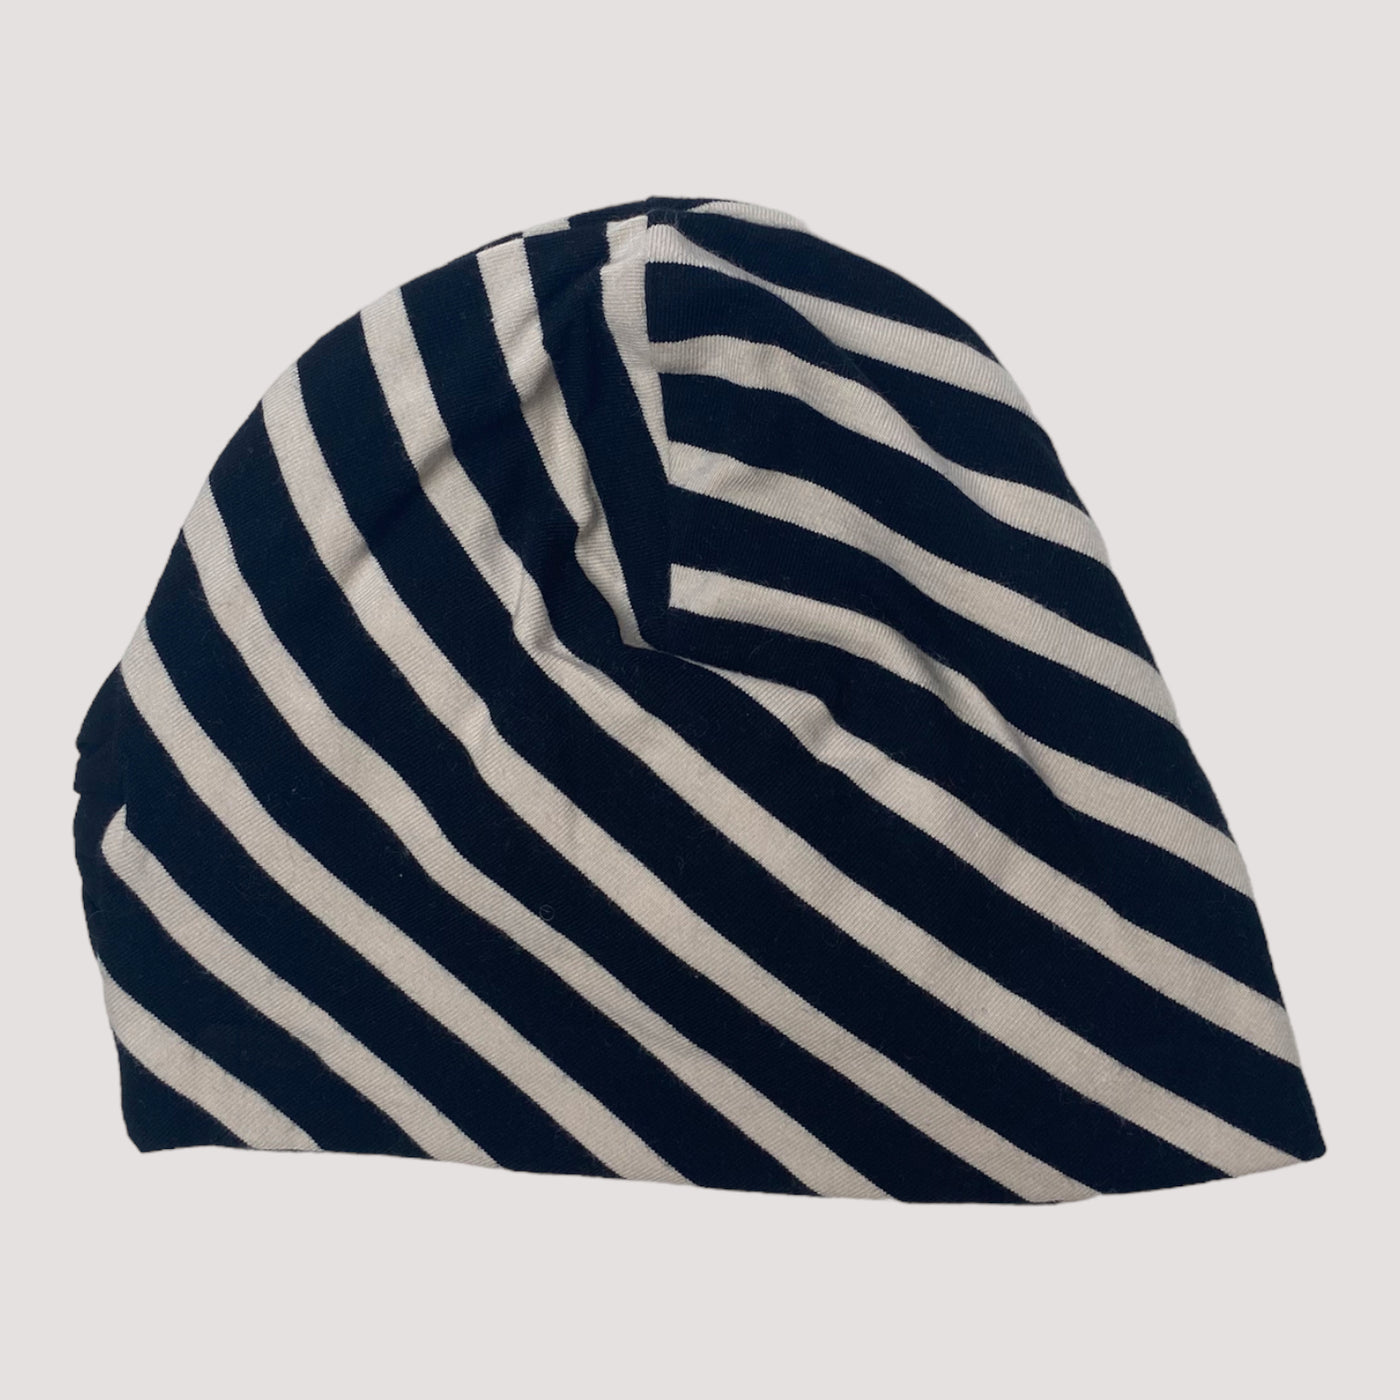 Papu bow beanie, stripes | 38/40cm